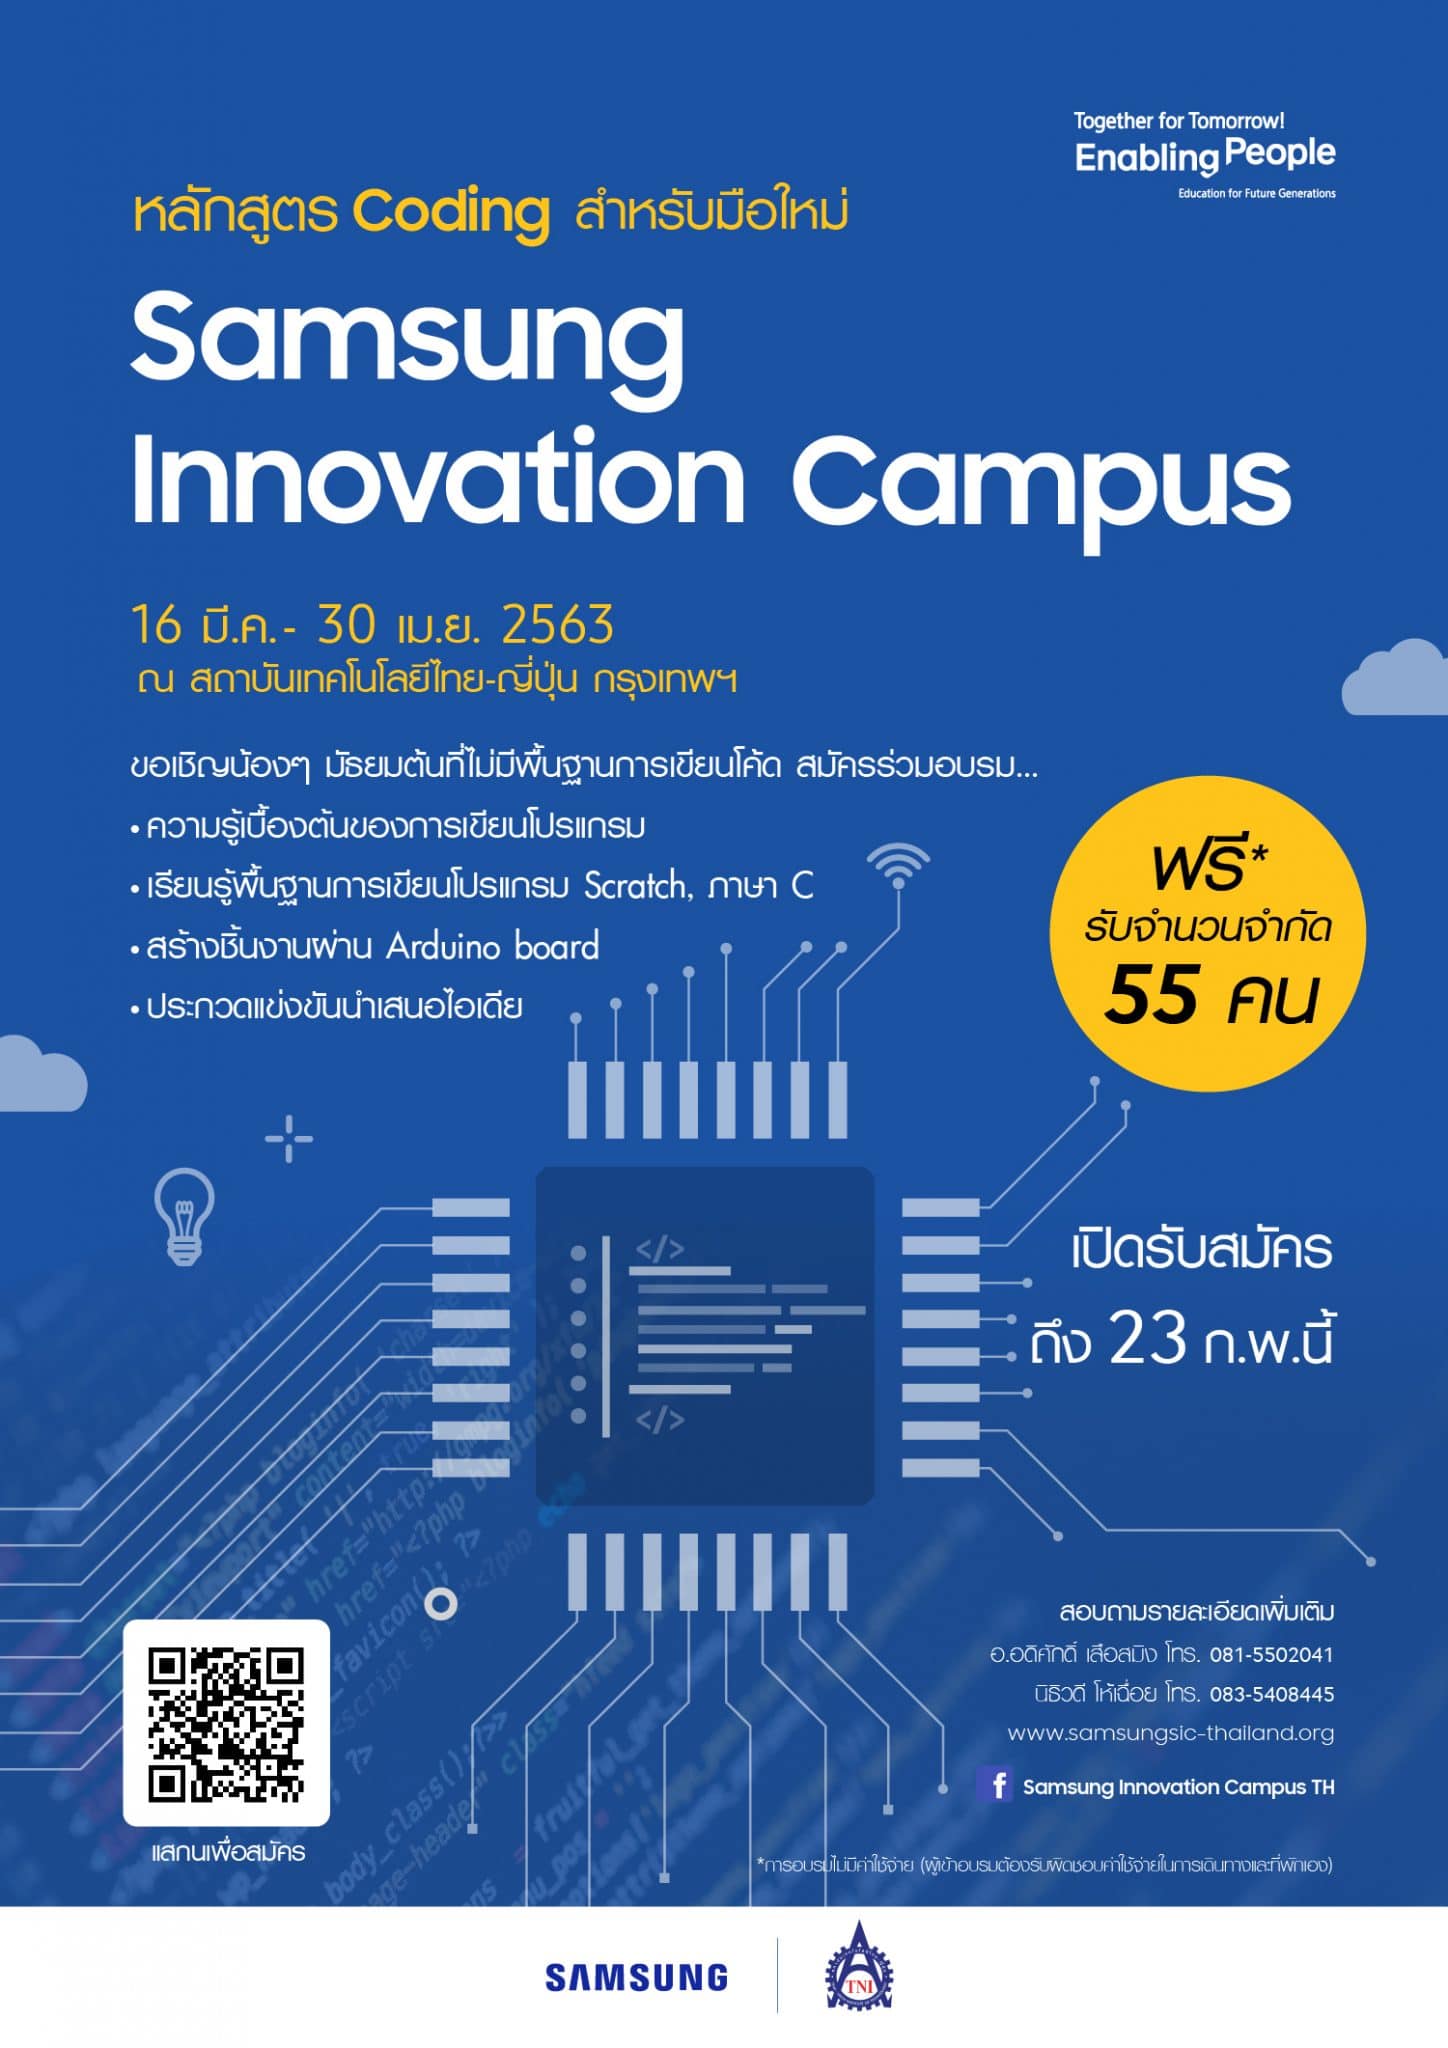 เปิดรับสมัคร Samsung Innovation Campus คอร์สอบรมโค้ดดิ้งและเขียนโปรแกรมขั้นพื้นฐานสำหรับน้องๆ ม.ต้น 17